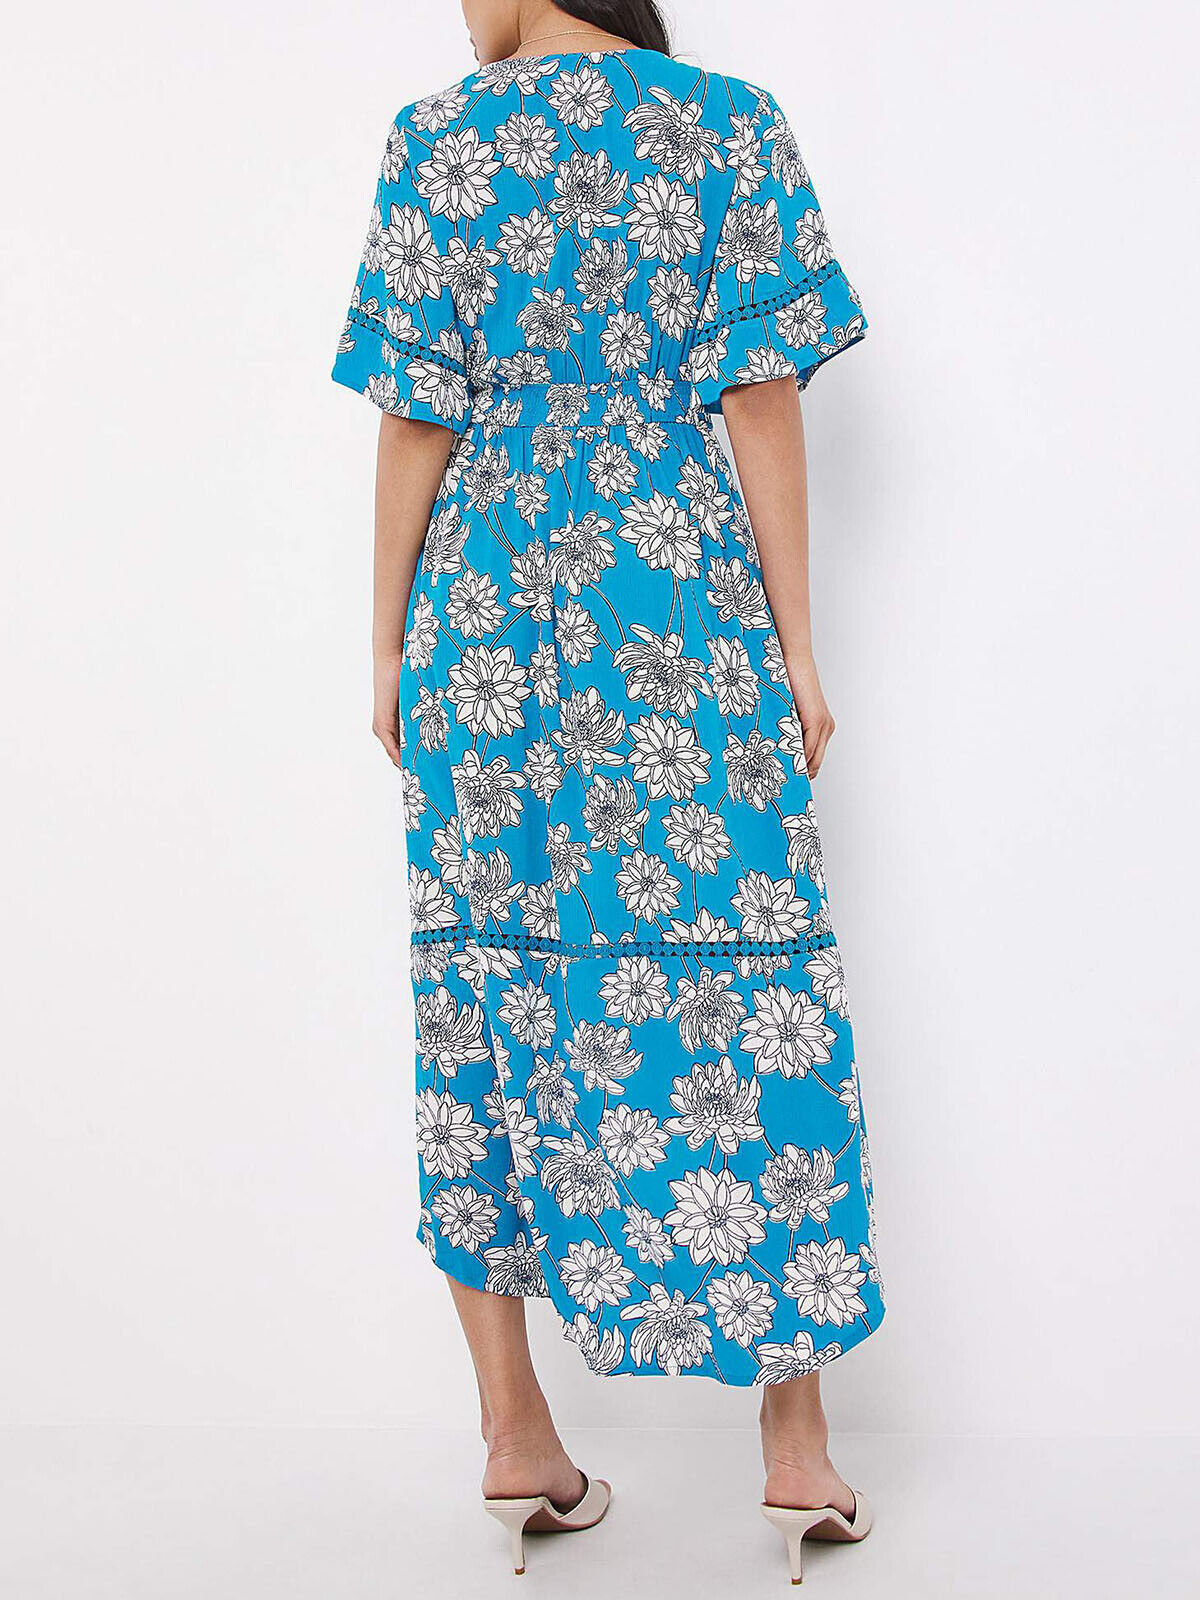 JD Williams Blue Floral Crinkle Hi Lo Ladder Dress Sizes 14, 18, 26 RRP £43